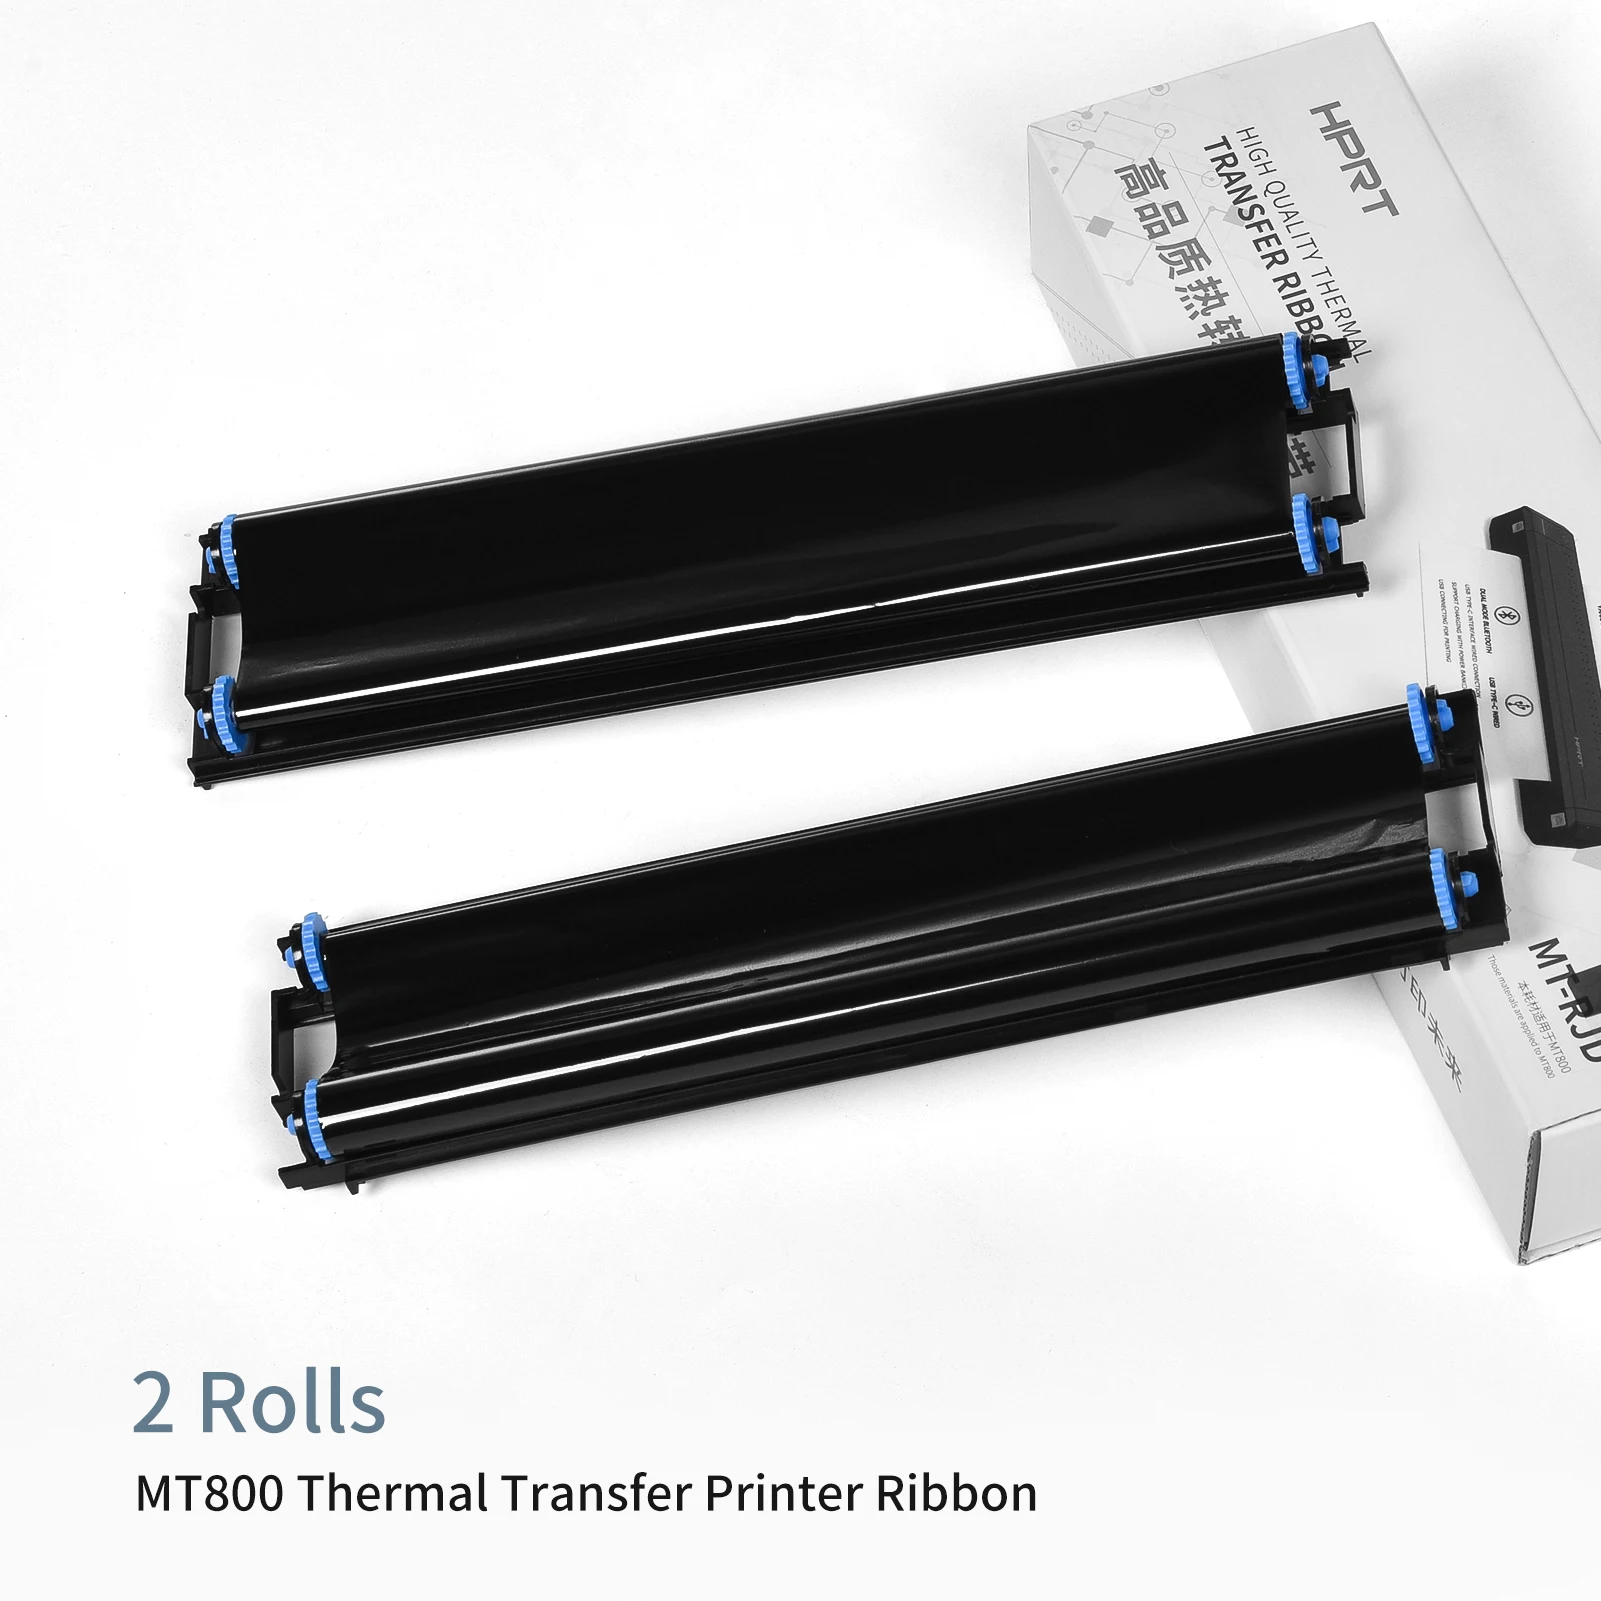 A4 Paper Printer Portable Photo Printer Direct Thermal Transfer Printer  Mobile Printer Bt Wireless Connection 300dpi 1pc Ribbon - Printers -  AliExpress